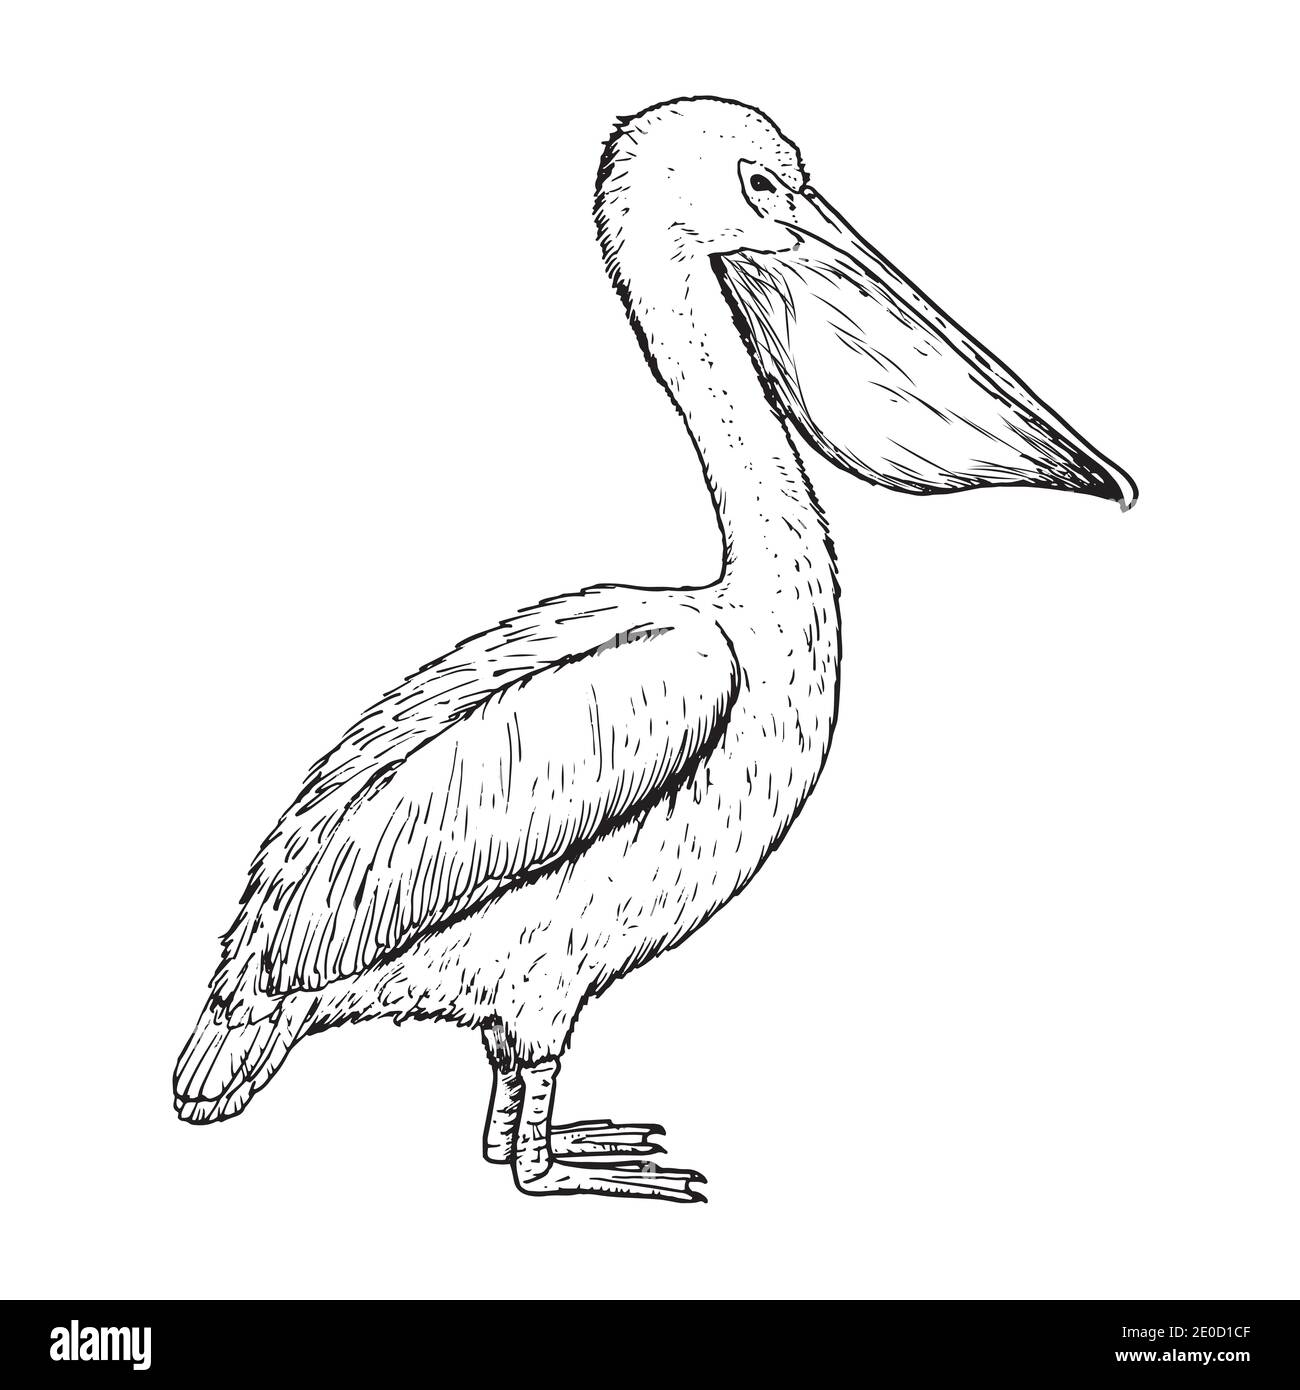 Zeichnung des Pelikans - Handzeichnung des Vogels Stock Vektor